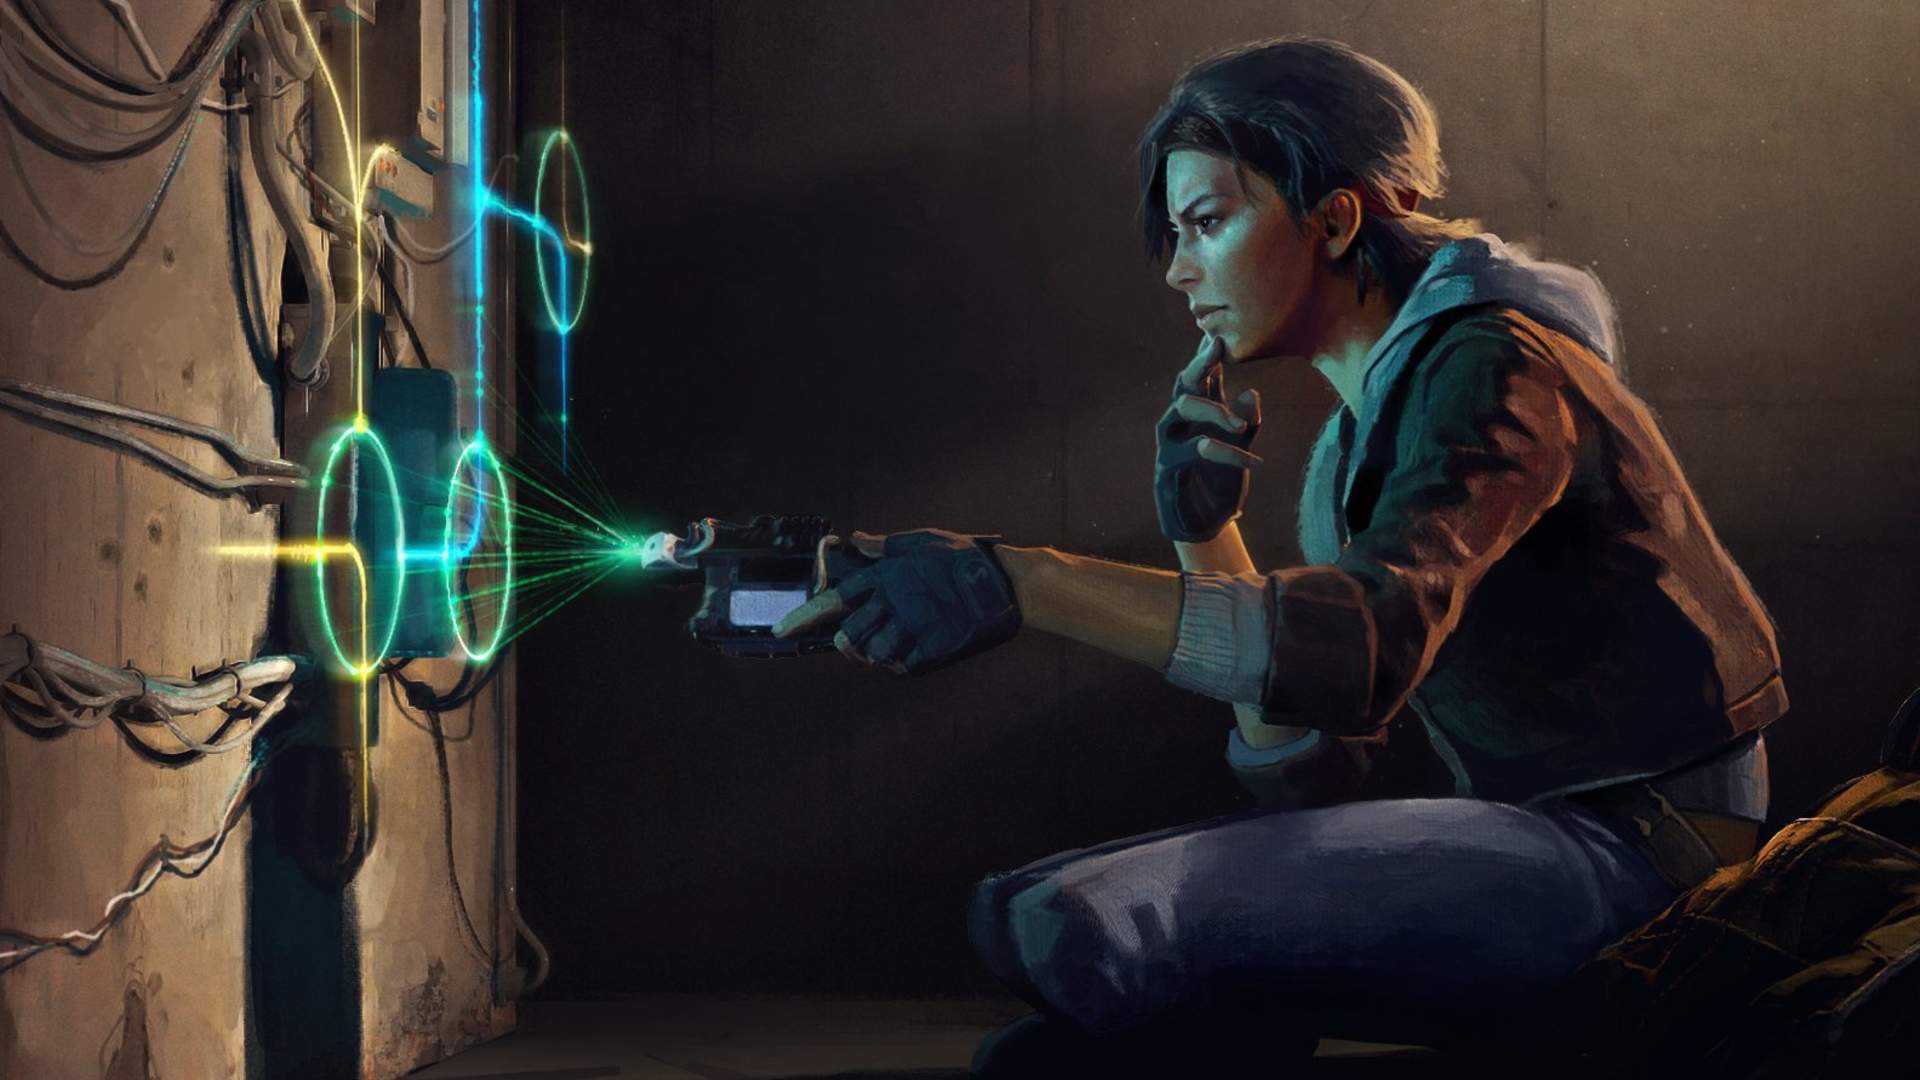 شخصیت الیکس در بازی Half Life Alyx مشغول کار با تکنولوژی های آینده نگرانه